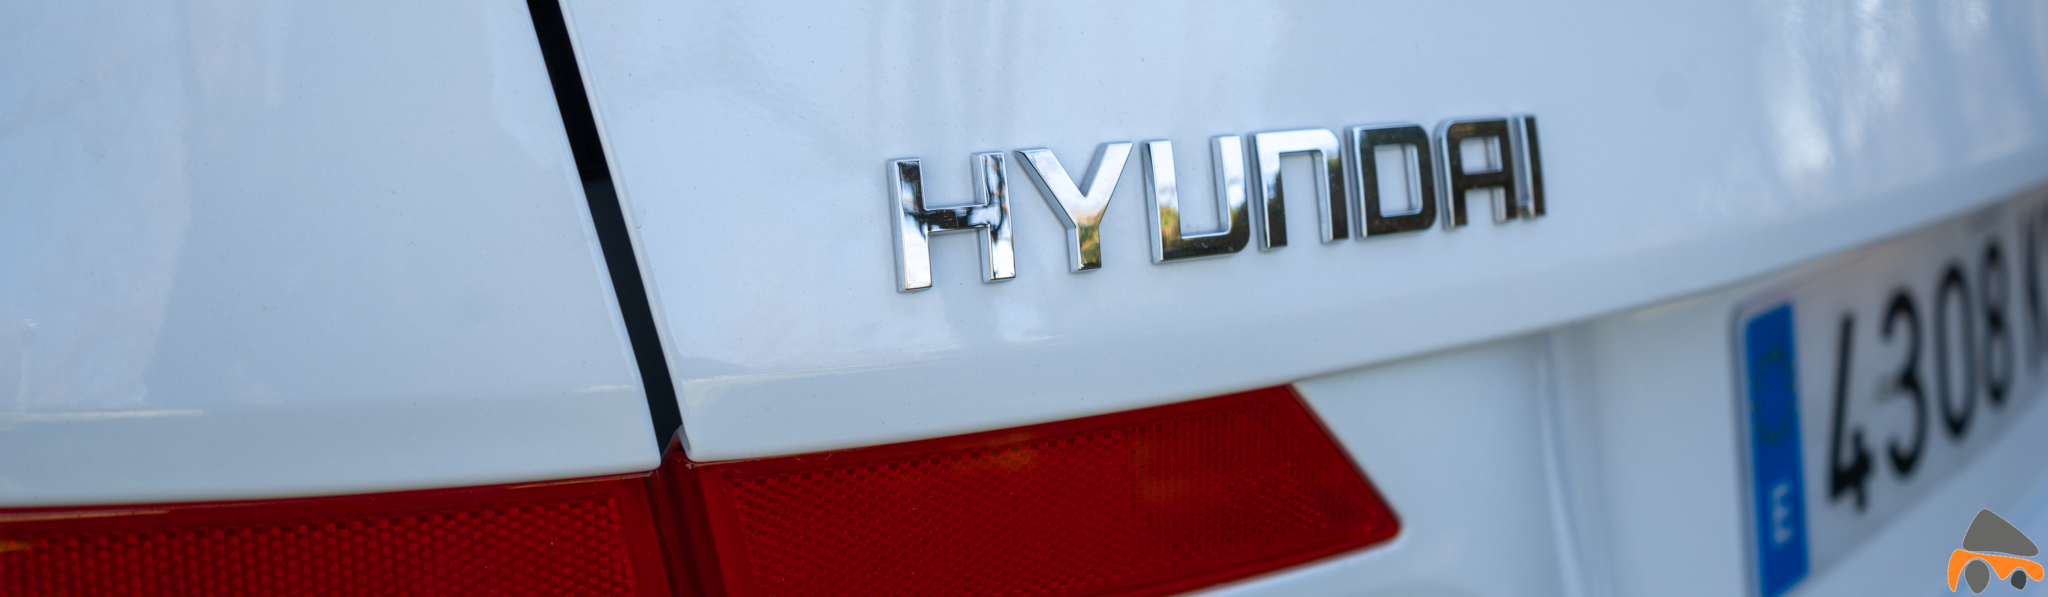 Logo Hyundai Hyundai Tucson Mild Hybrid - Hyundai Tucson Mild Hybrid de 48 voltios: Un SUV micro híbrido diésel